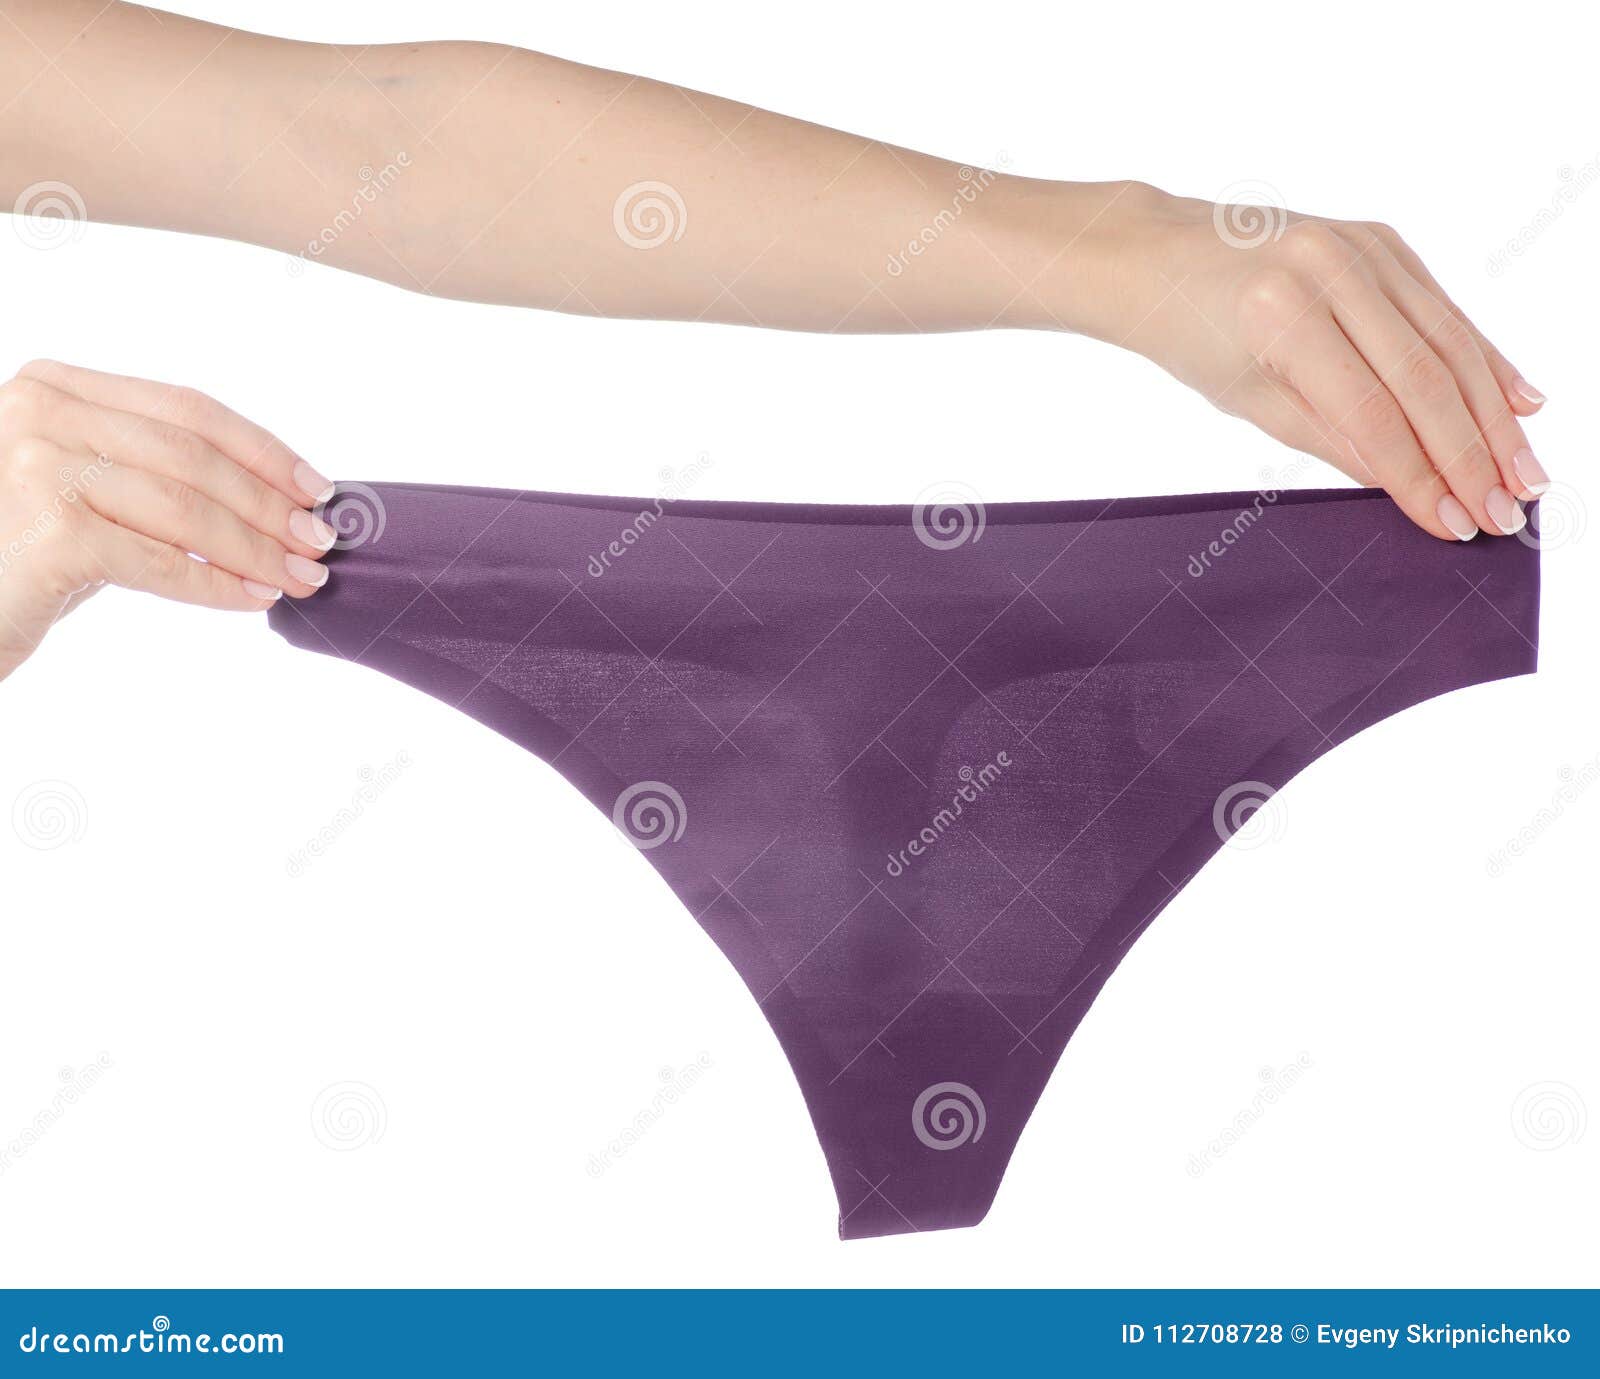 Cute women panties seamless pattern. Underwear - Stock Illustration  [86180783] - PIXTA